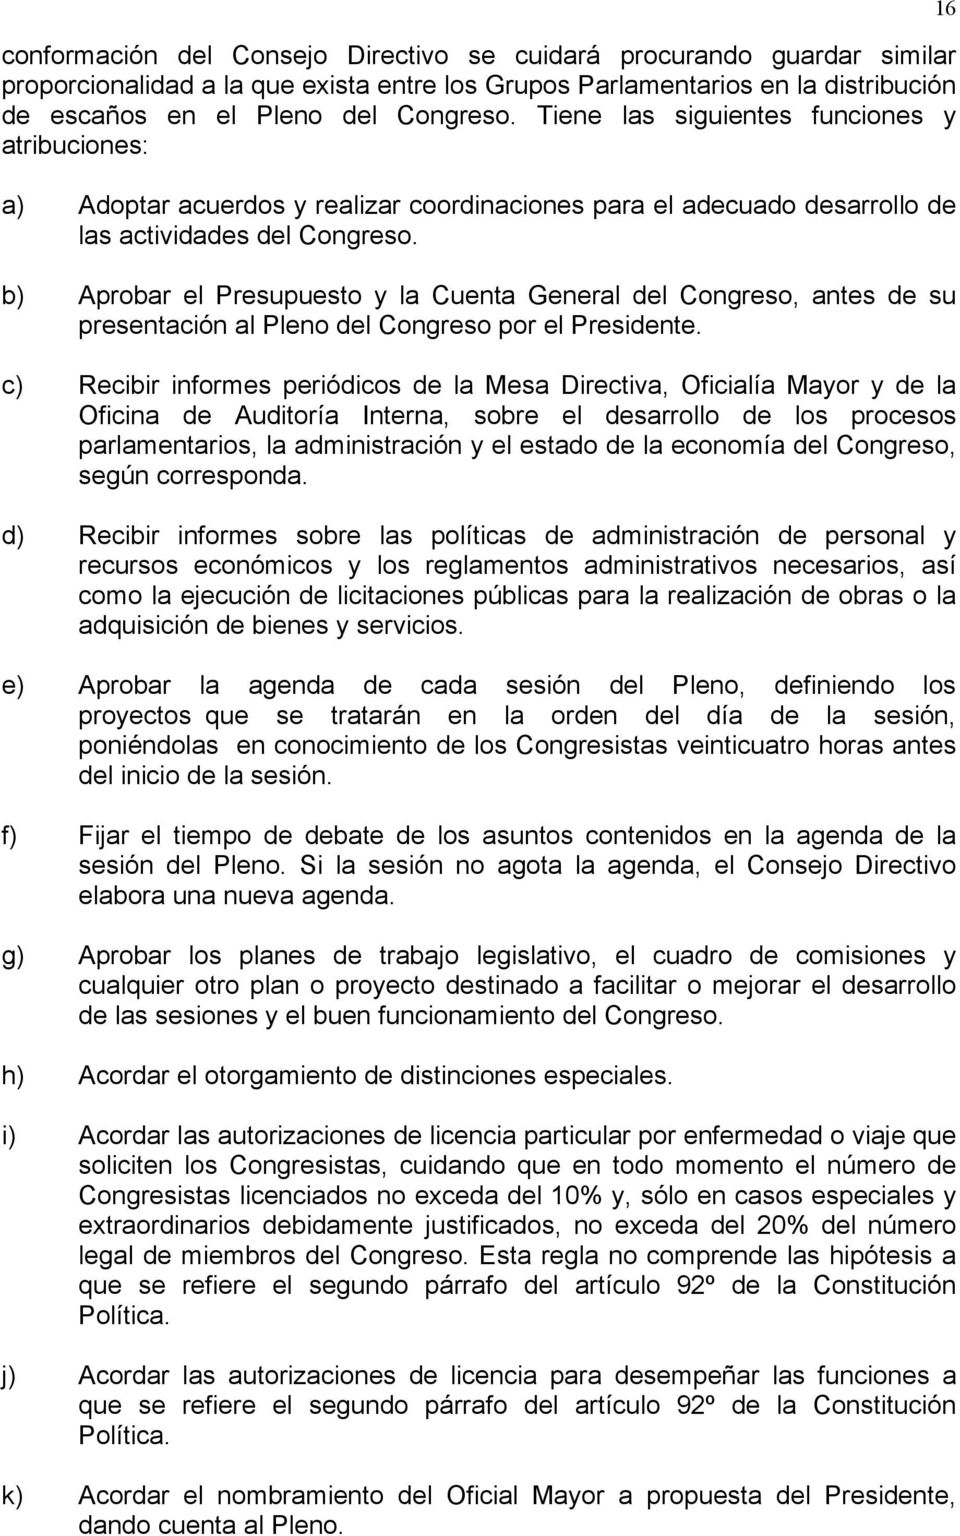 b) Aprobar el Presupuesto y la Cuenta General del Congreso, antes de su presentación al Pleno del Congreso por el Presidente.